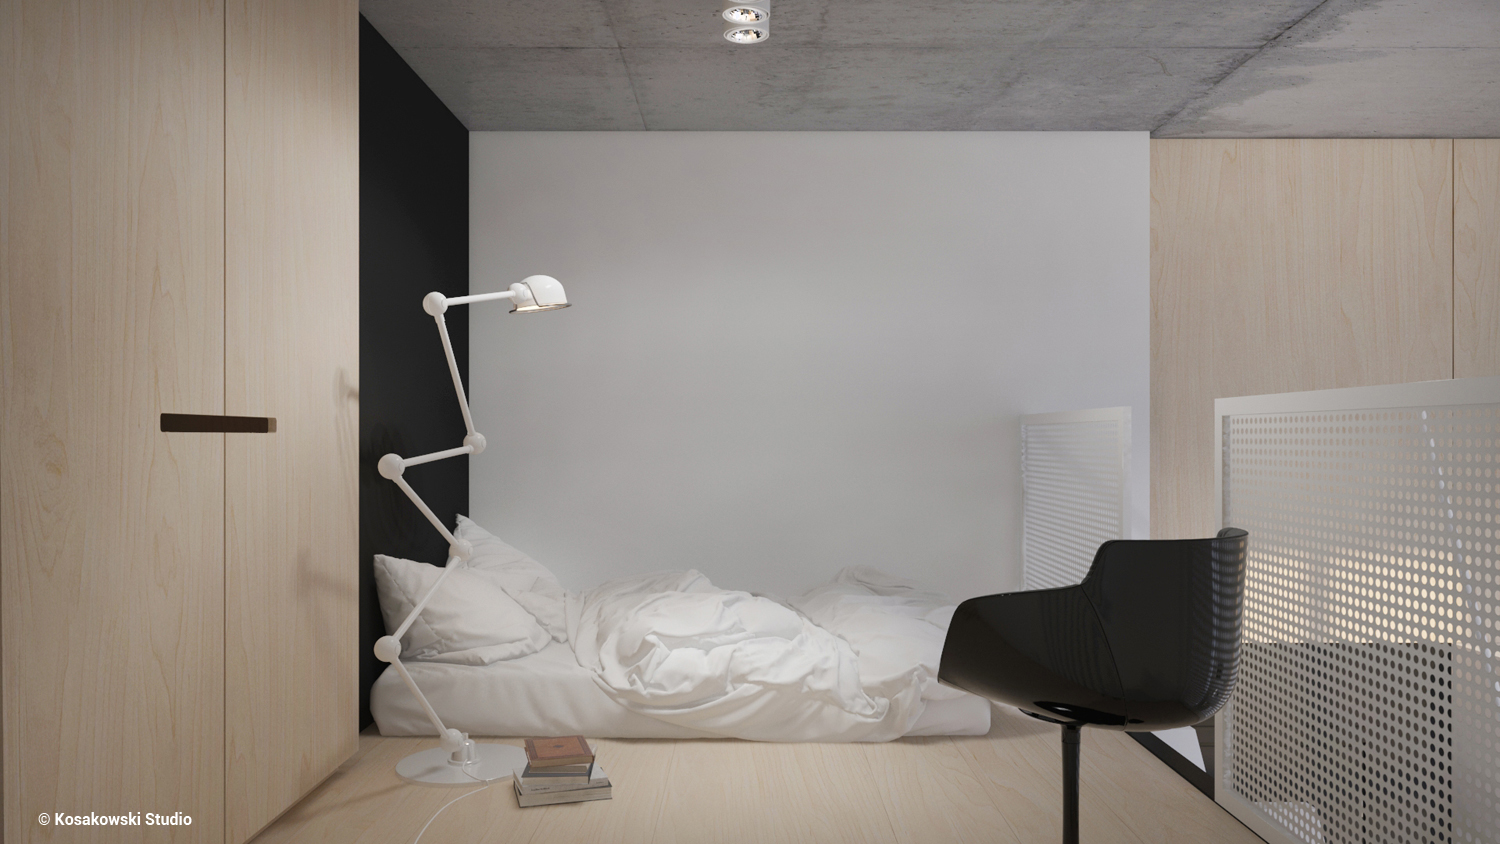 Małe przestrzenie: minimalizm i styl industrialny, czyli Soft Loft na warszawskiej Pradze